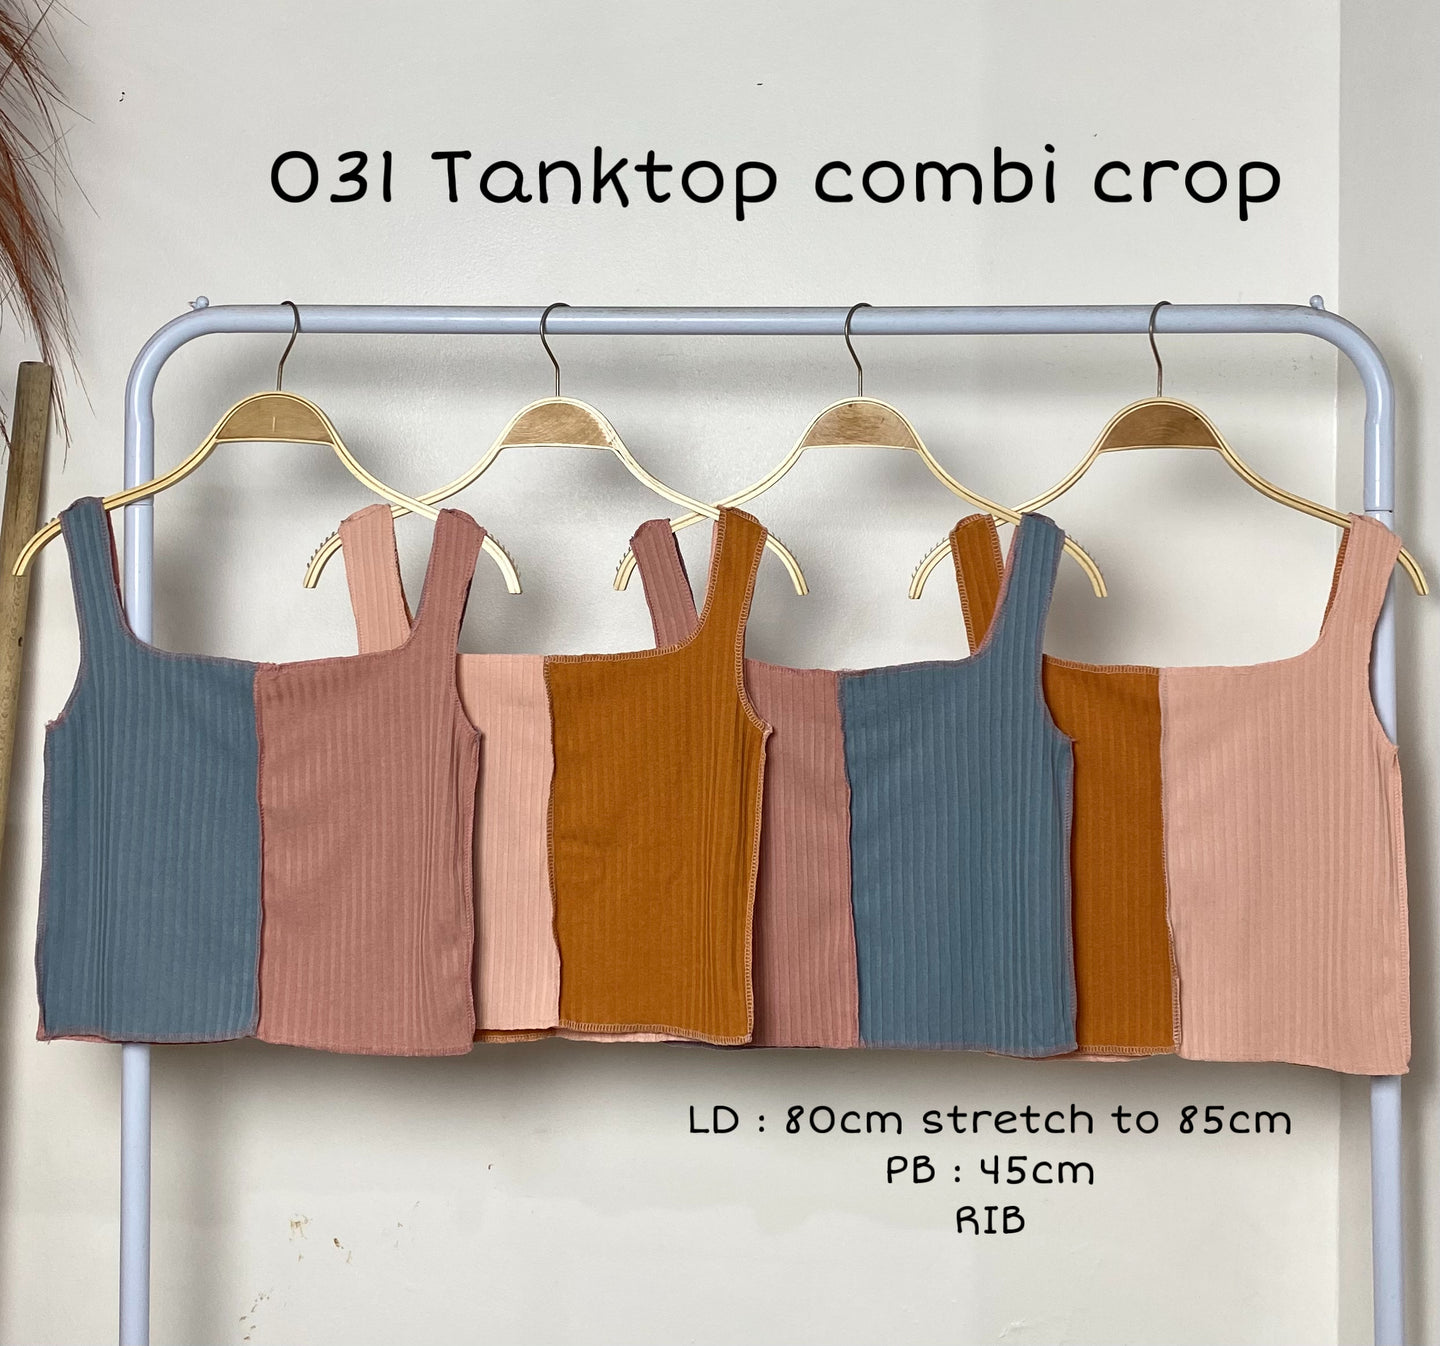 031 Tanktop combi crop